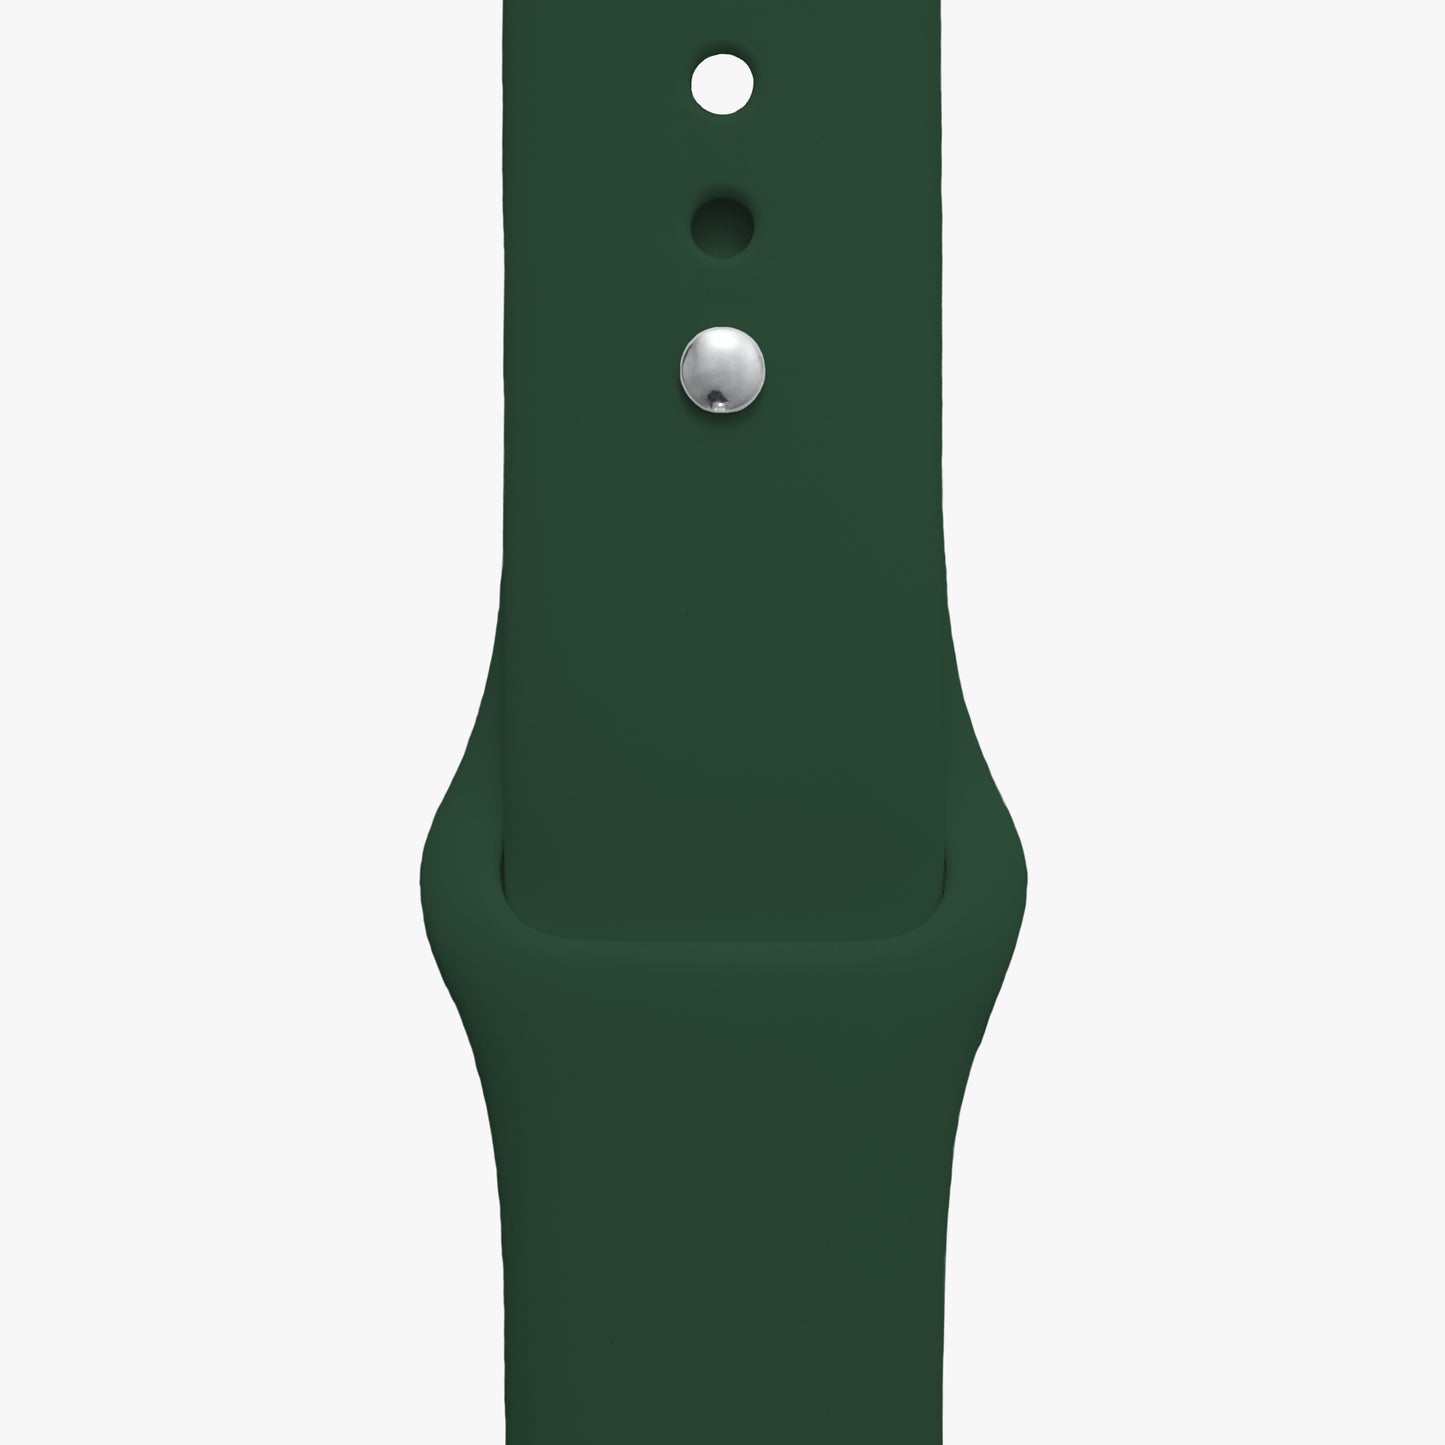 Sportarmband für Apple Watch in dunkelgrün - 2 Größen in Länge S/M + M/L